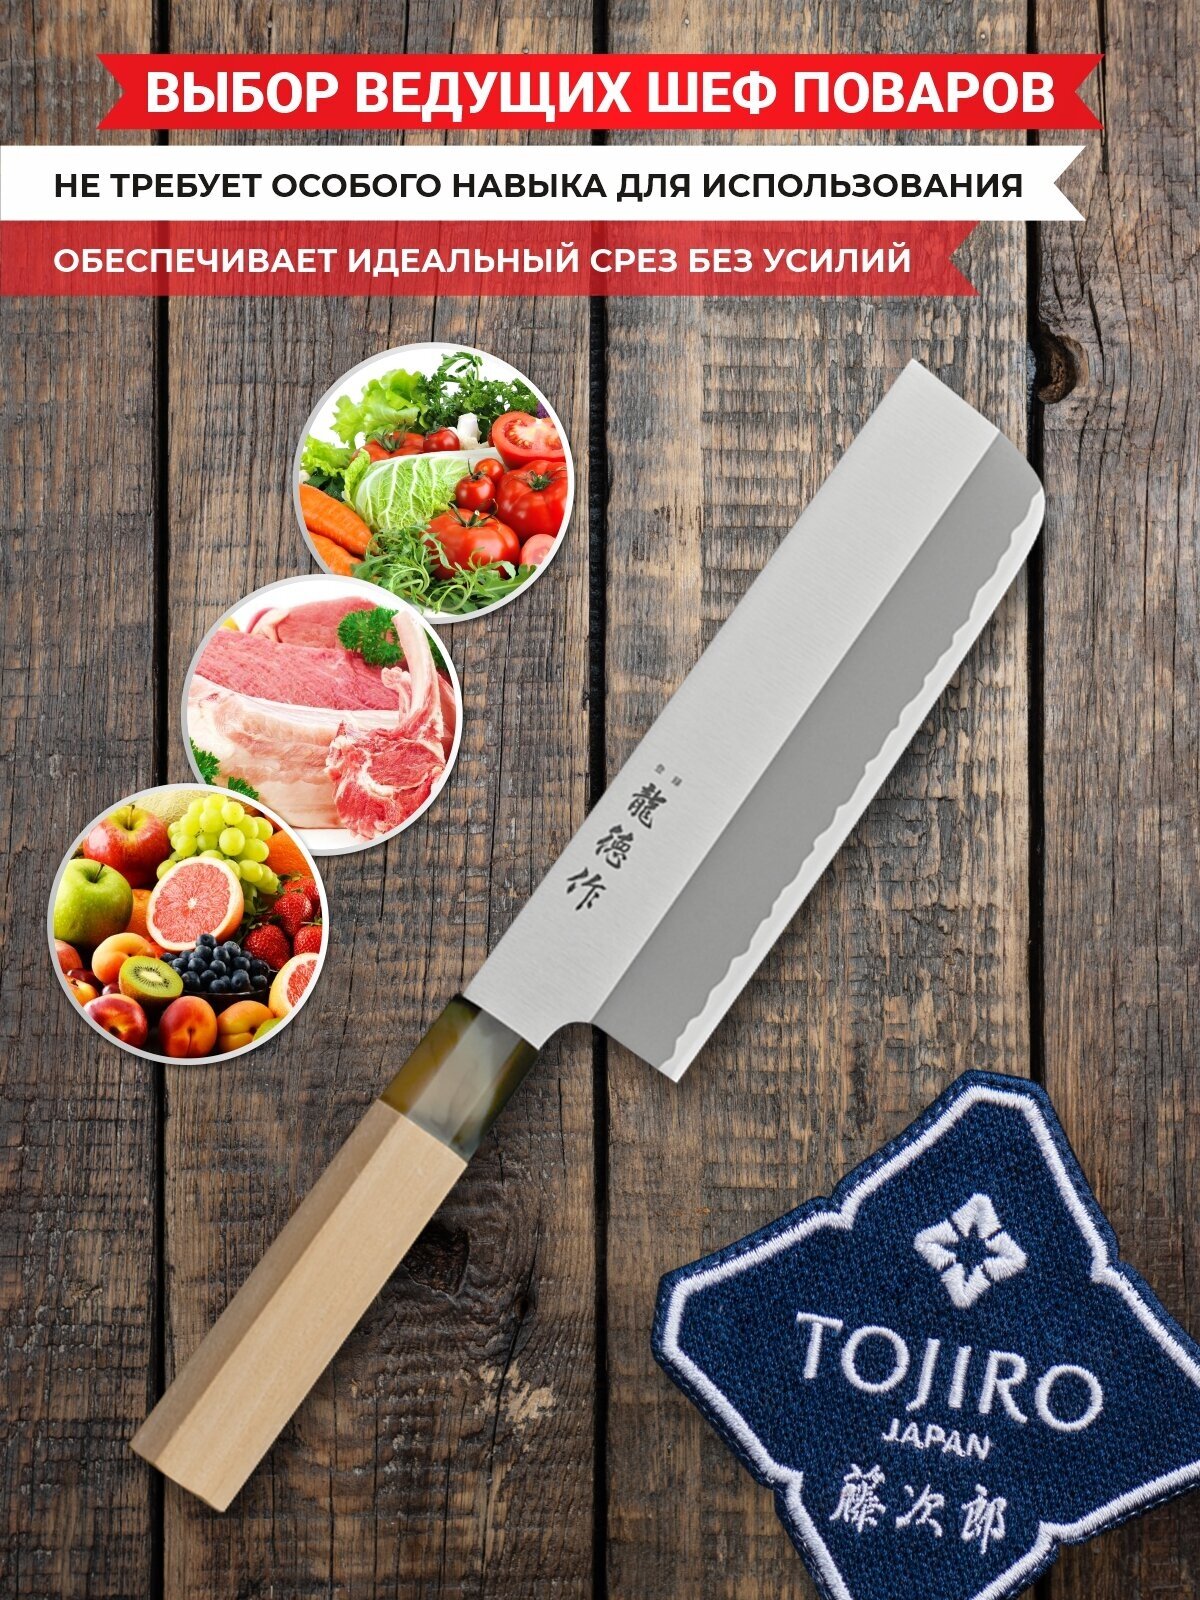 Нож Накири TOJIRO FC-580